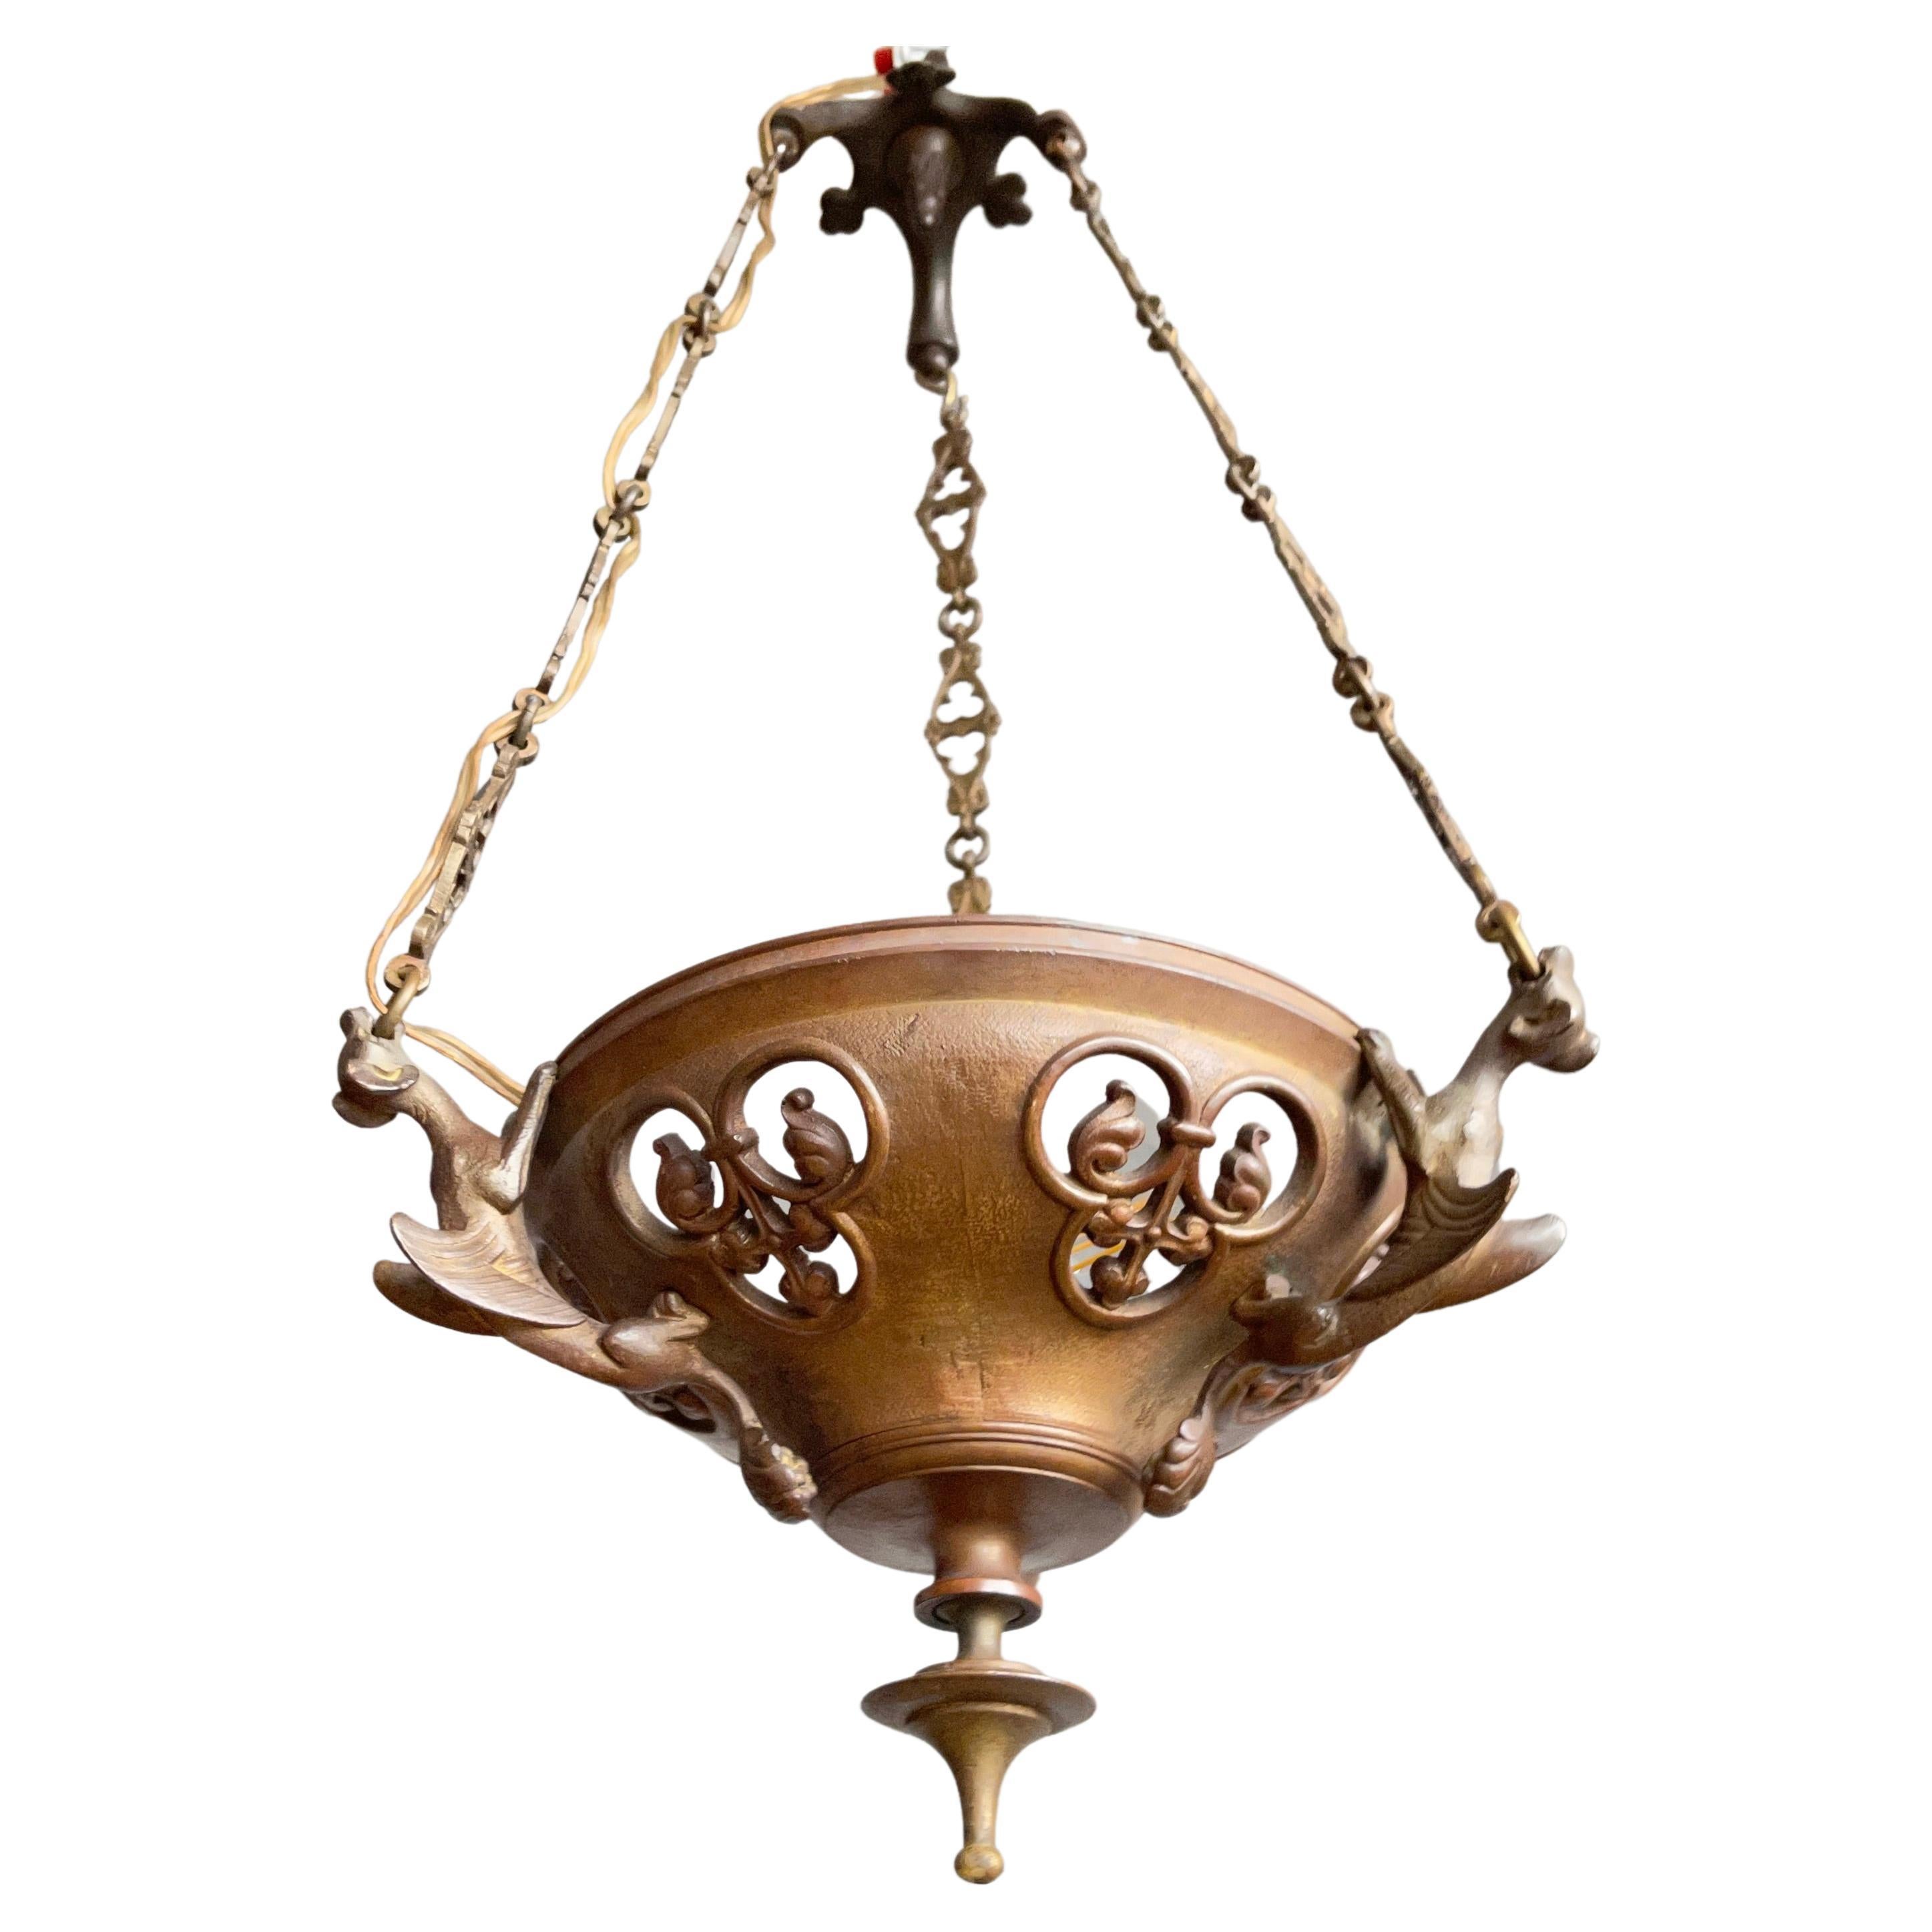 Antique Bronze Gothic Sanctuary Lamp / Church Pendant with Gargoyle Sculptures For Sale